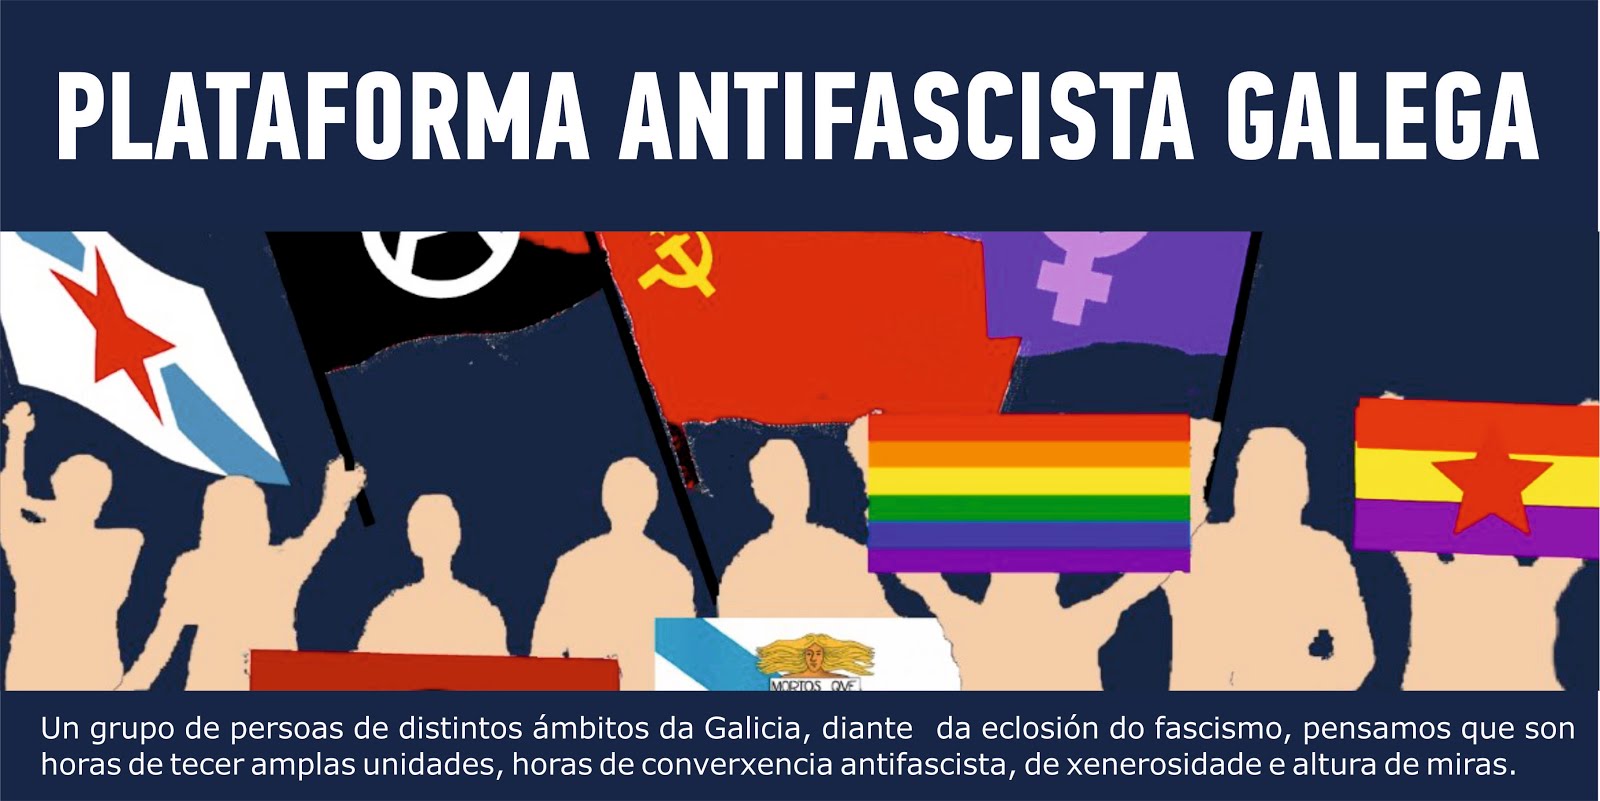 Plataforma Antifascista Galega